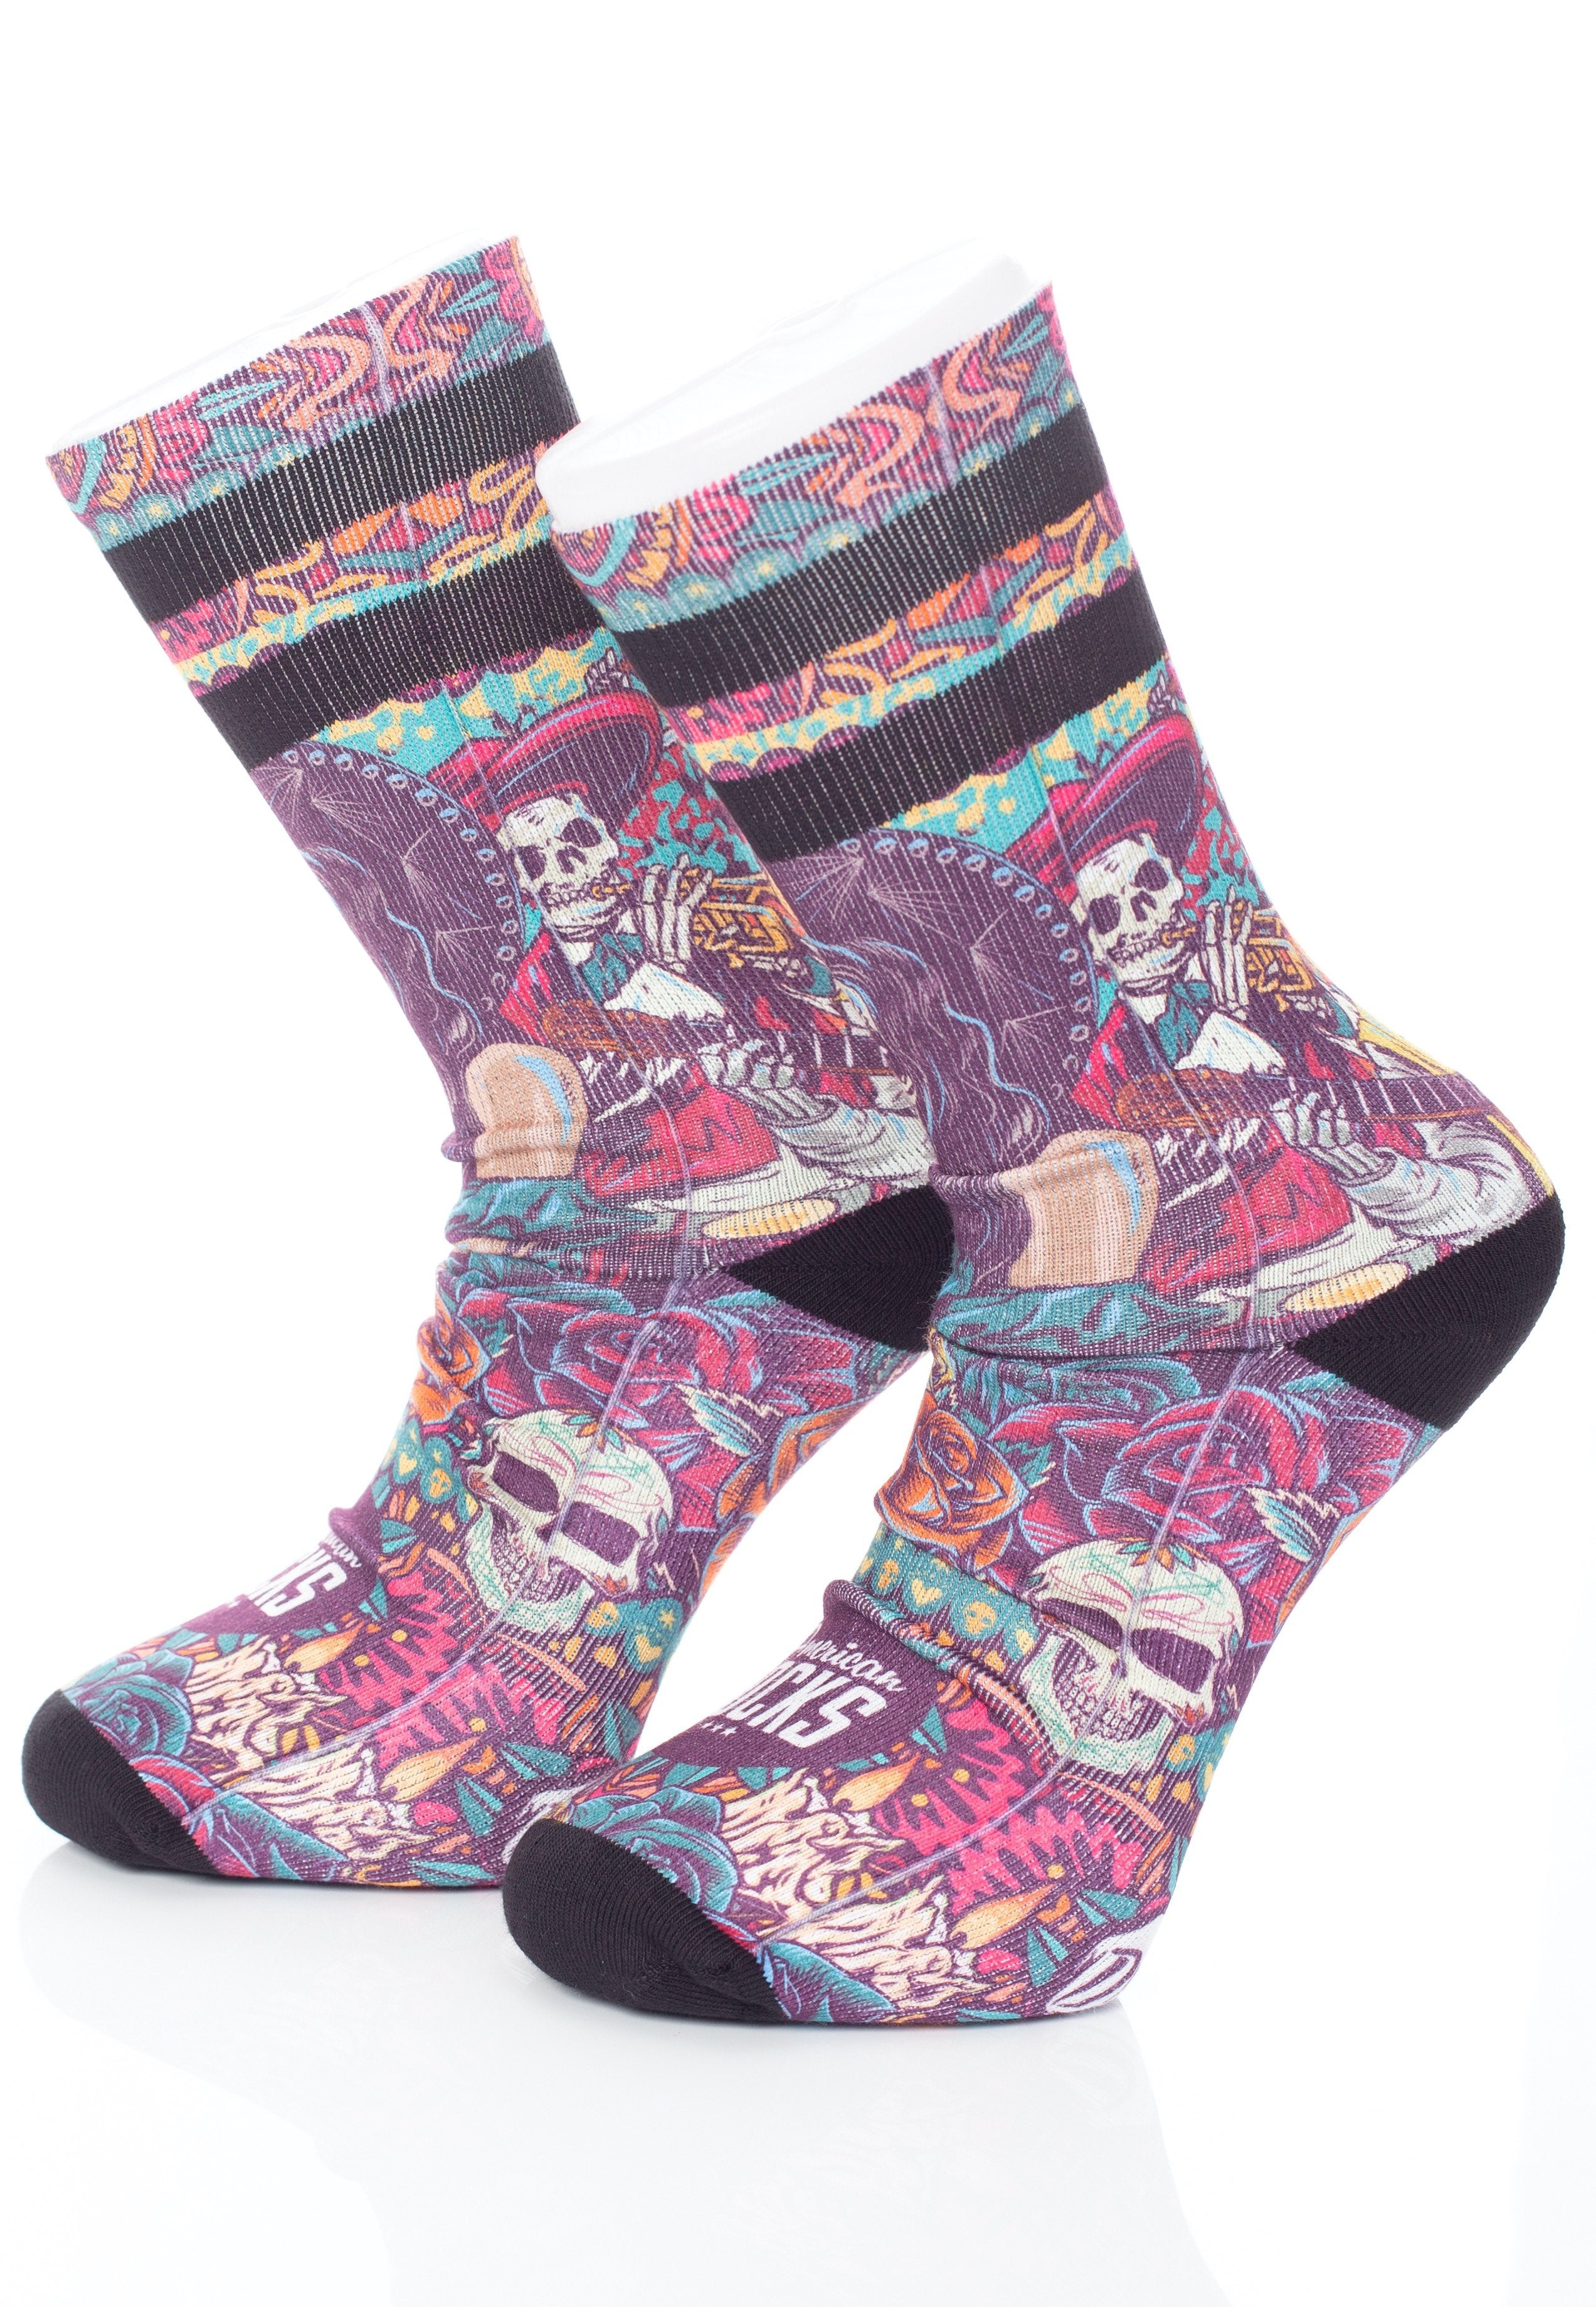 American Socks - Día de los muertos Mid High - Socks